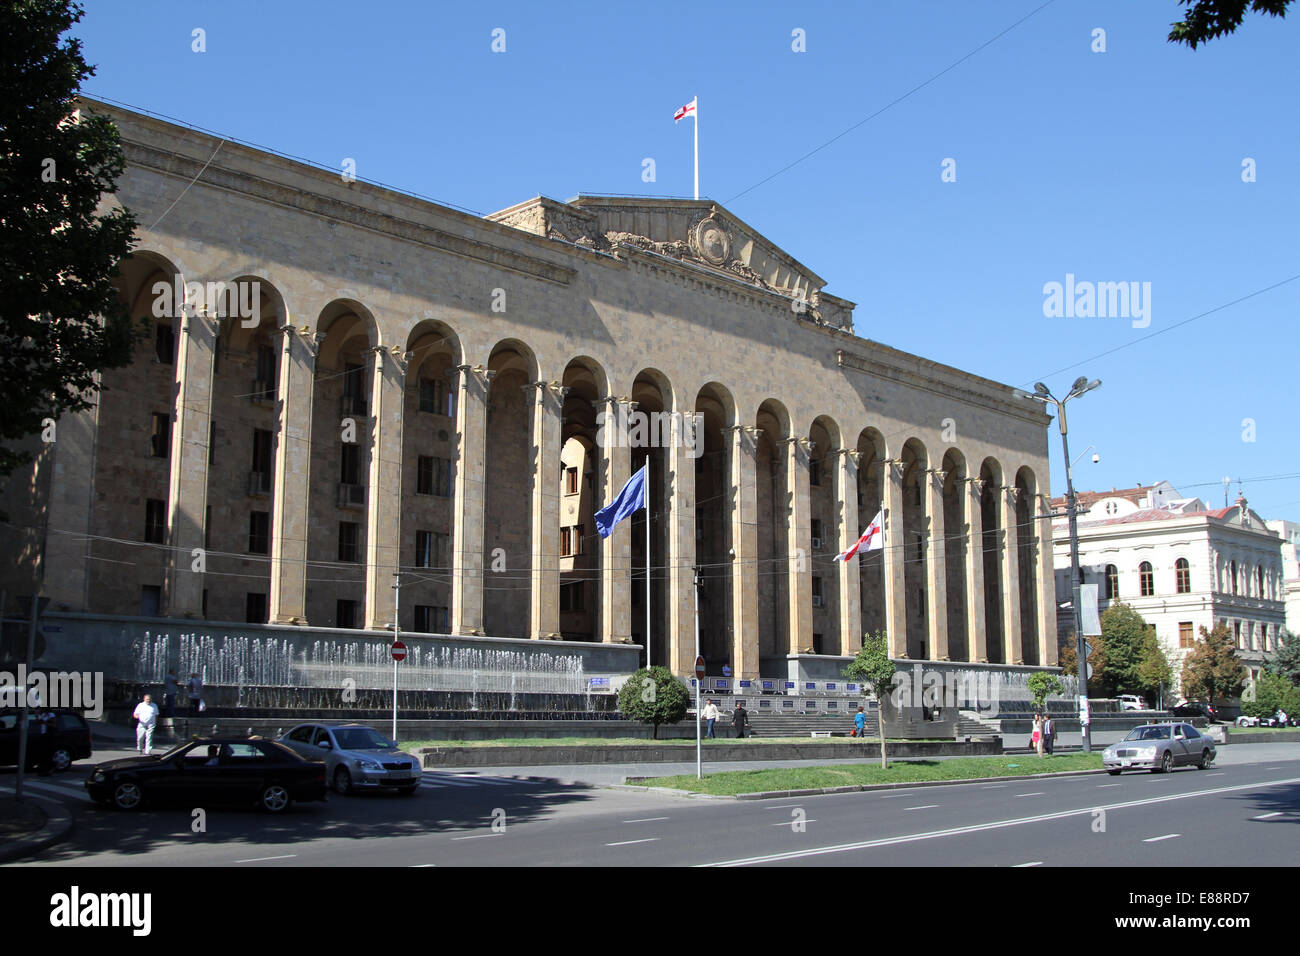 L'ancien bâtiment du parlement Shota Rustaveli Avenue à Tbilissi, Géorgie le samedi 13 septembre 2014. Banque D'Images